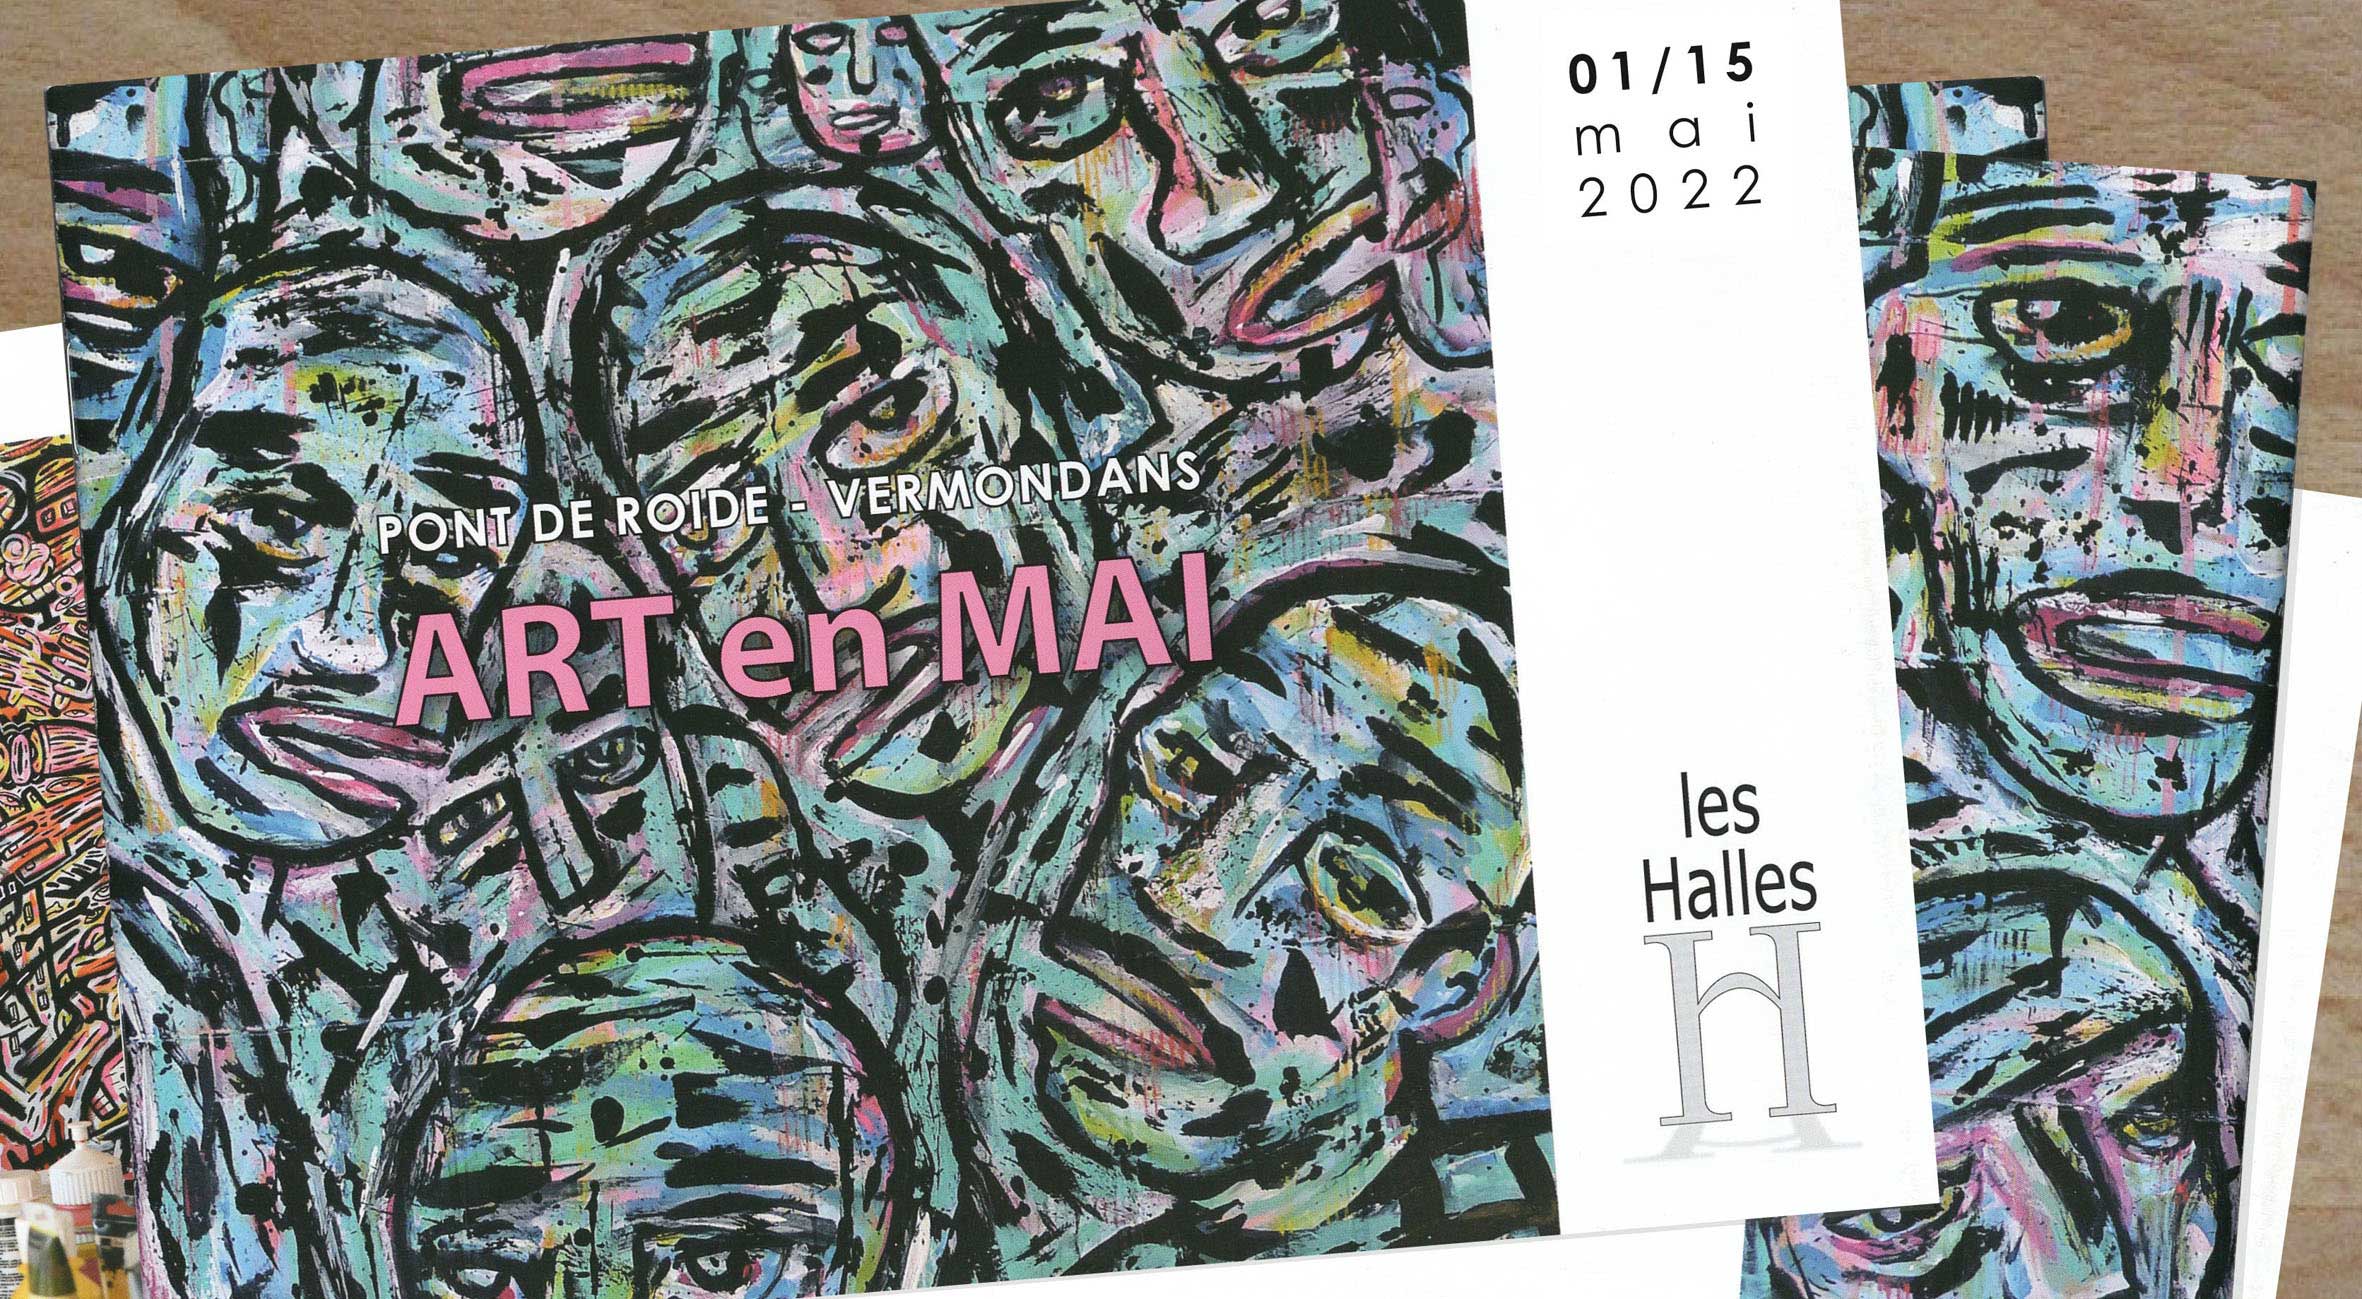 Plaquette de l'exposition collective Art en Mai 2022 à Pont de Roide.